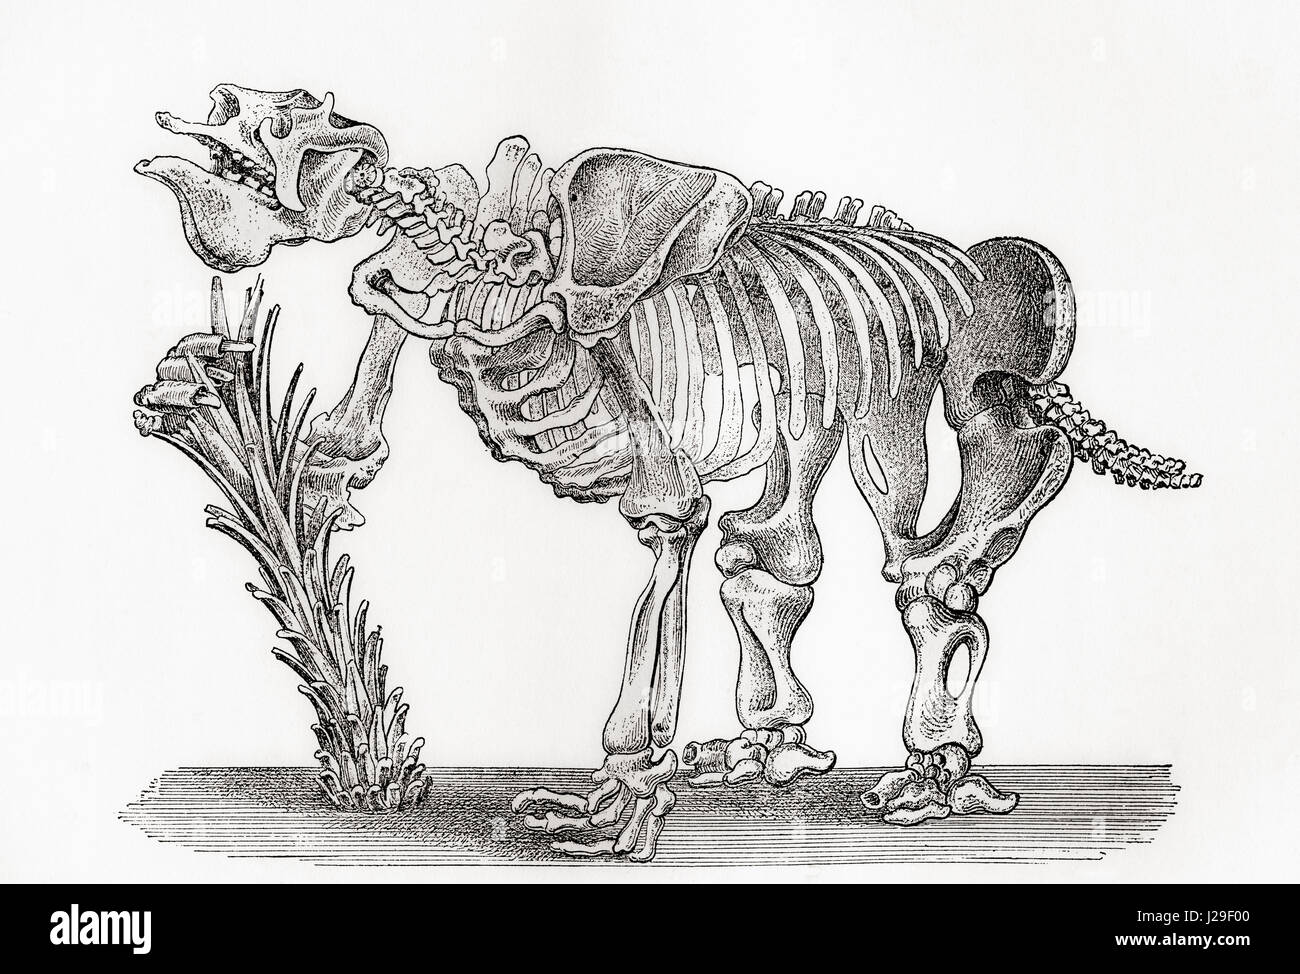 Esqueleto de un Megatharium. Desde los cimientos del mundo o la Geología para principiantes, publicado en 1883. Foto de stock